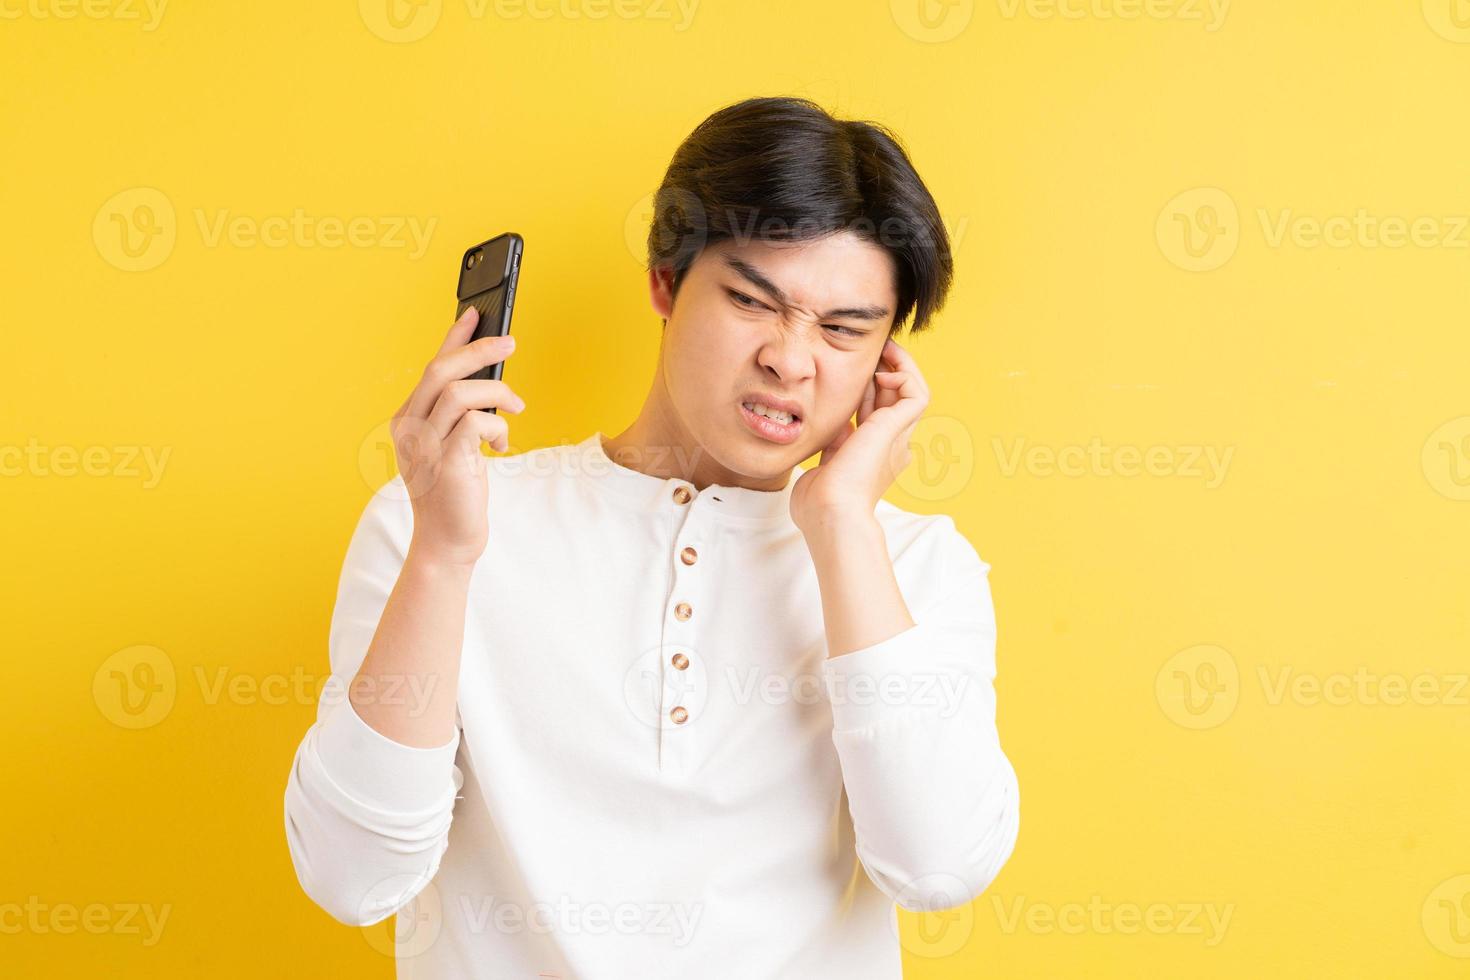 homem asiático sendo gritado em seu ouvido enquanto falava ao telefone foto